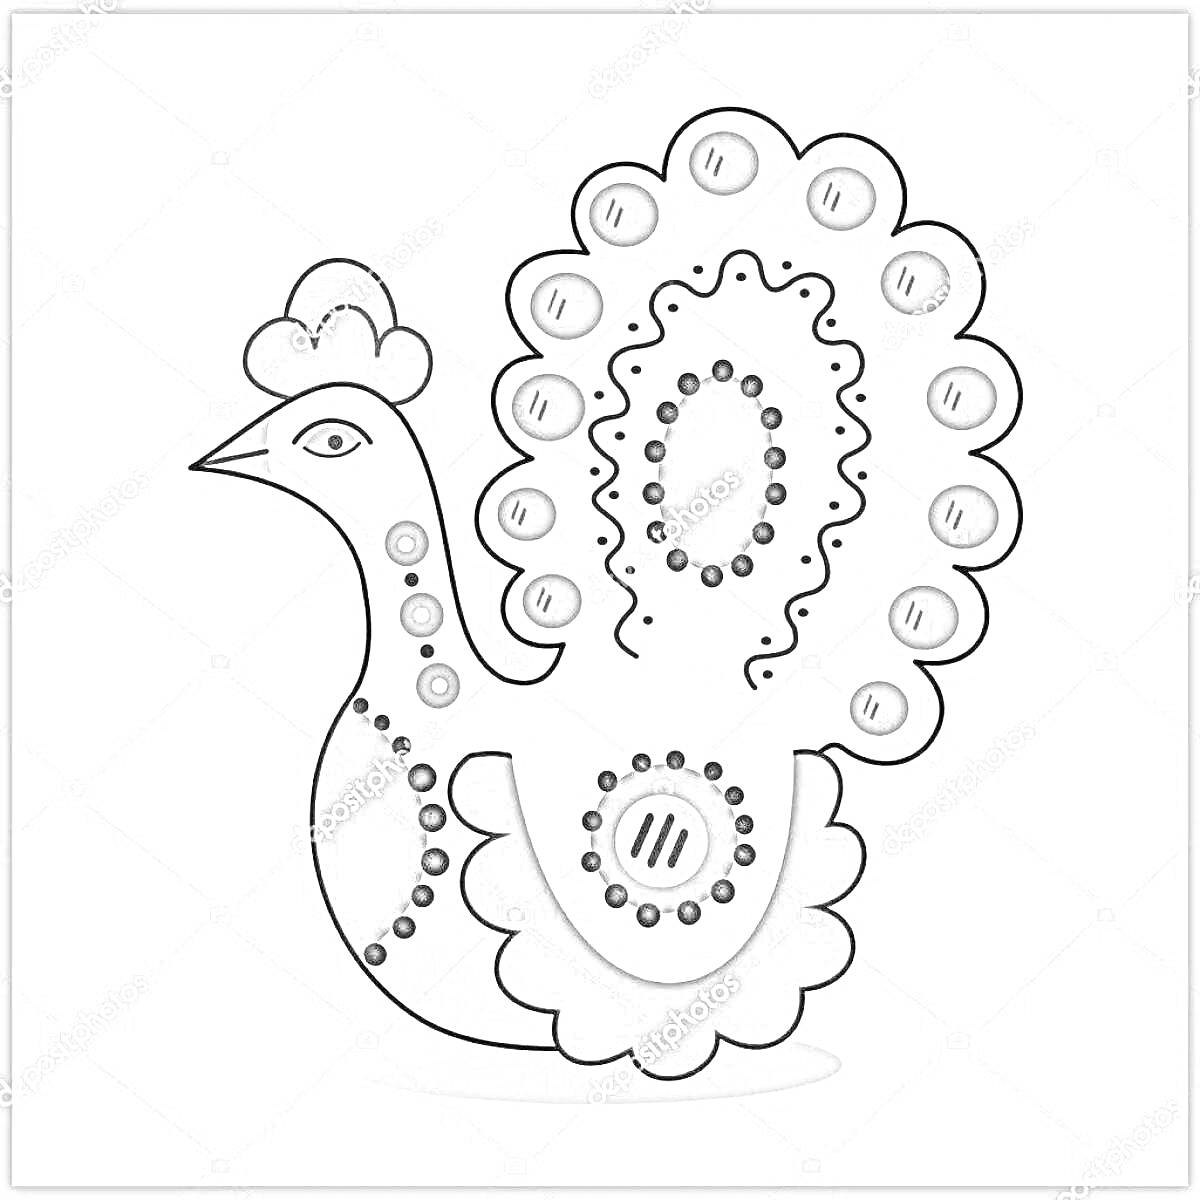 Раскраска дымковская игрушка петушок с большим хвостом, волнистыми росписями на хвосте, круглыми точками, рисунком в центре и гребешком